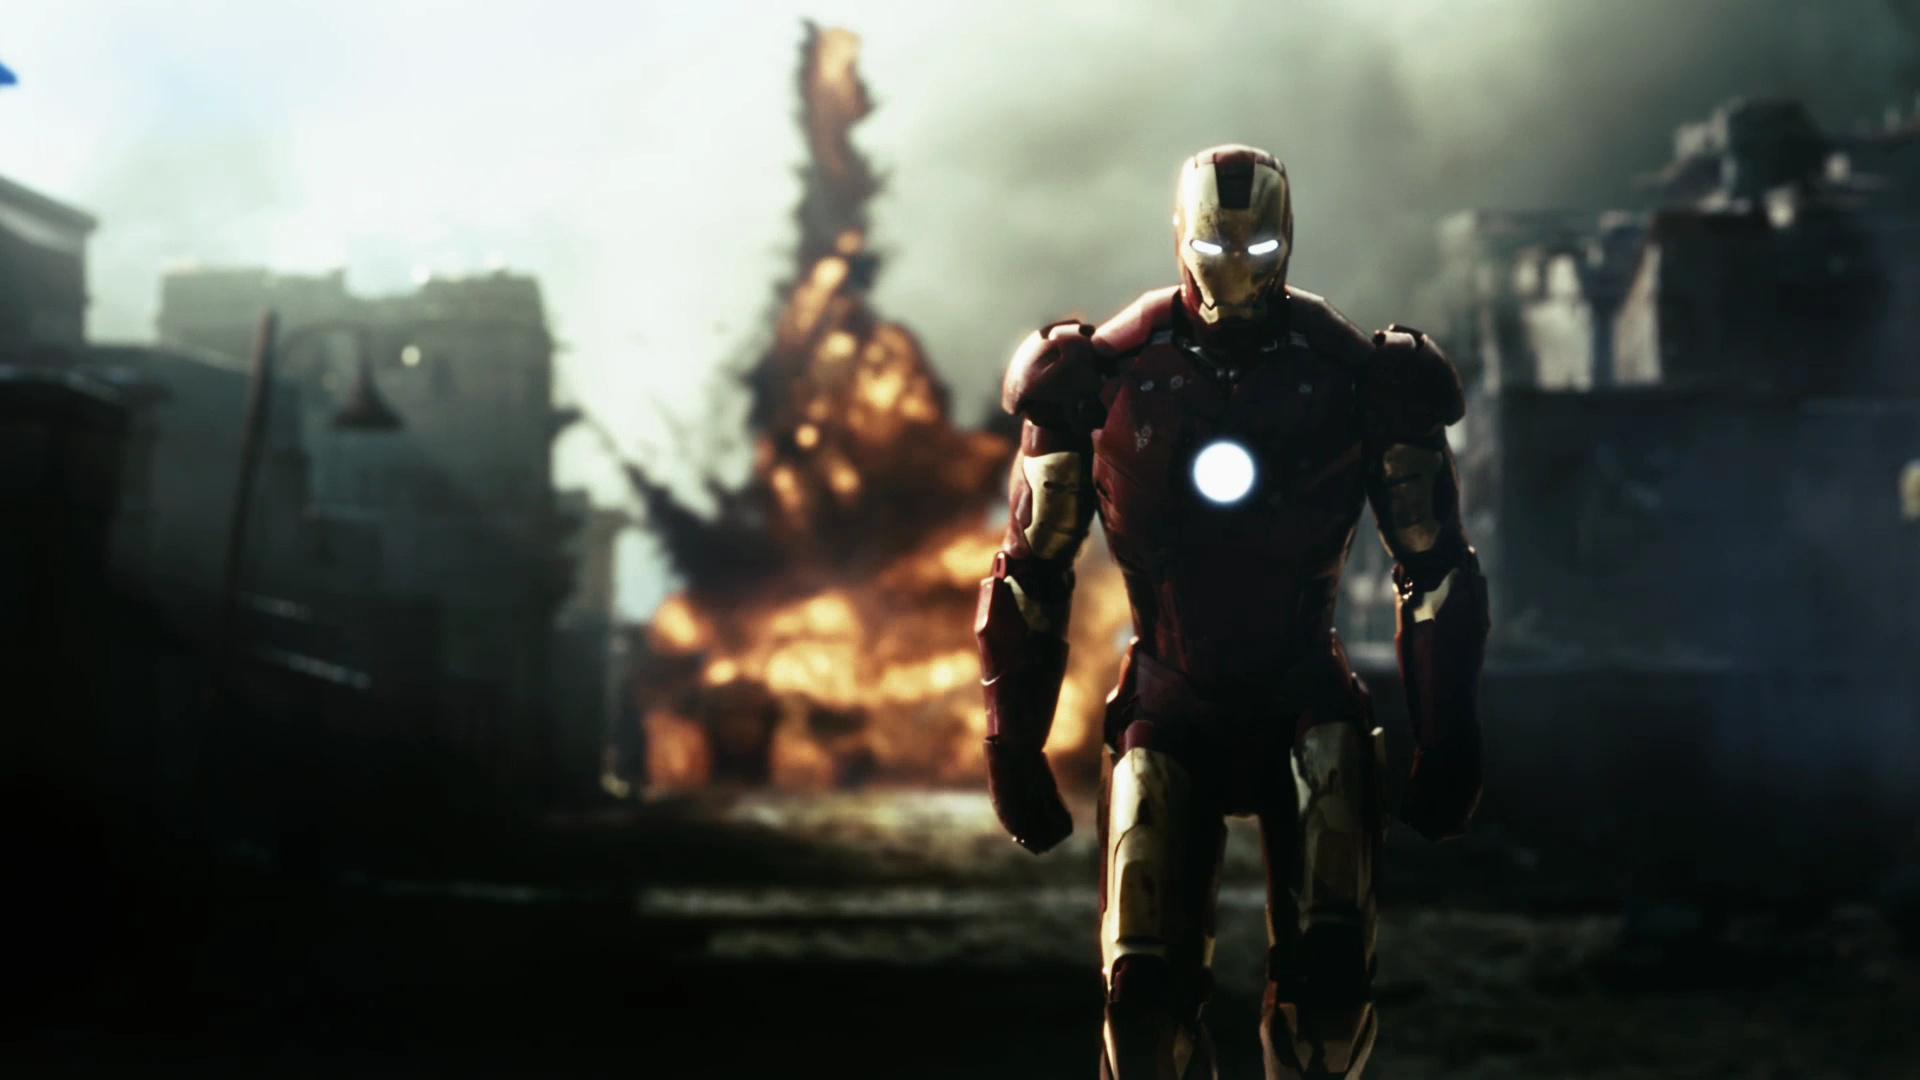 Iron Man, Железный человек обои для рабочего стола, картинки, фото,  1920x1080.